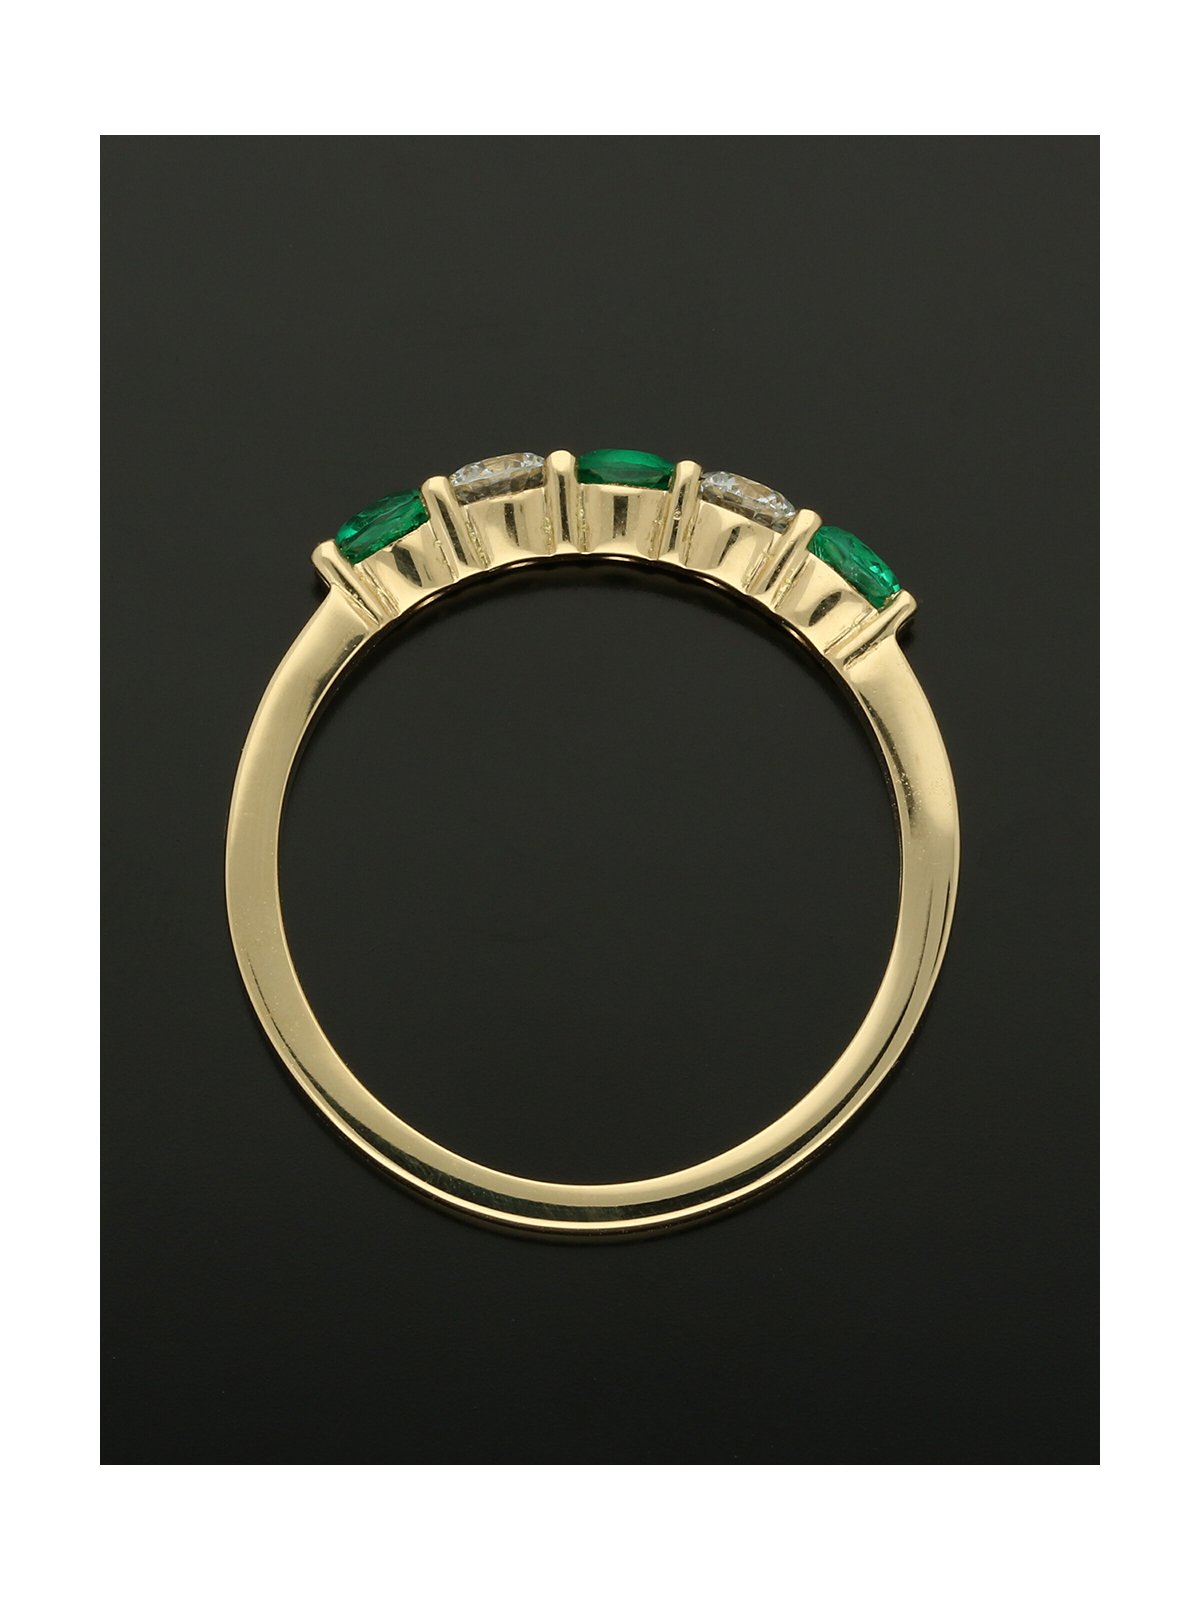 Emerald & Diamond Five Stone Round Brilliant Cut in 18ct Yellow Gold